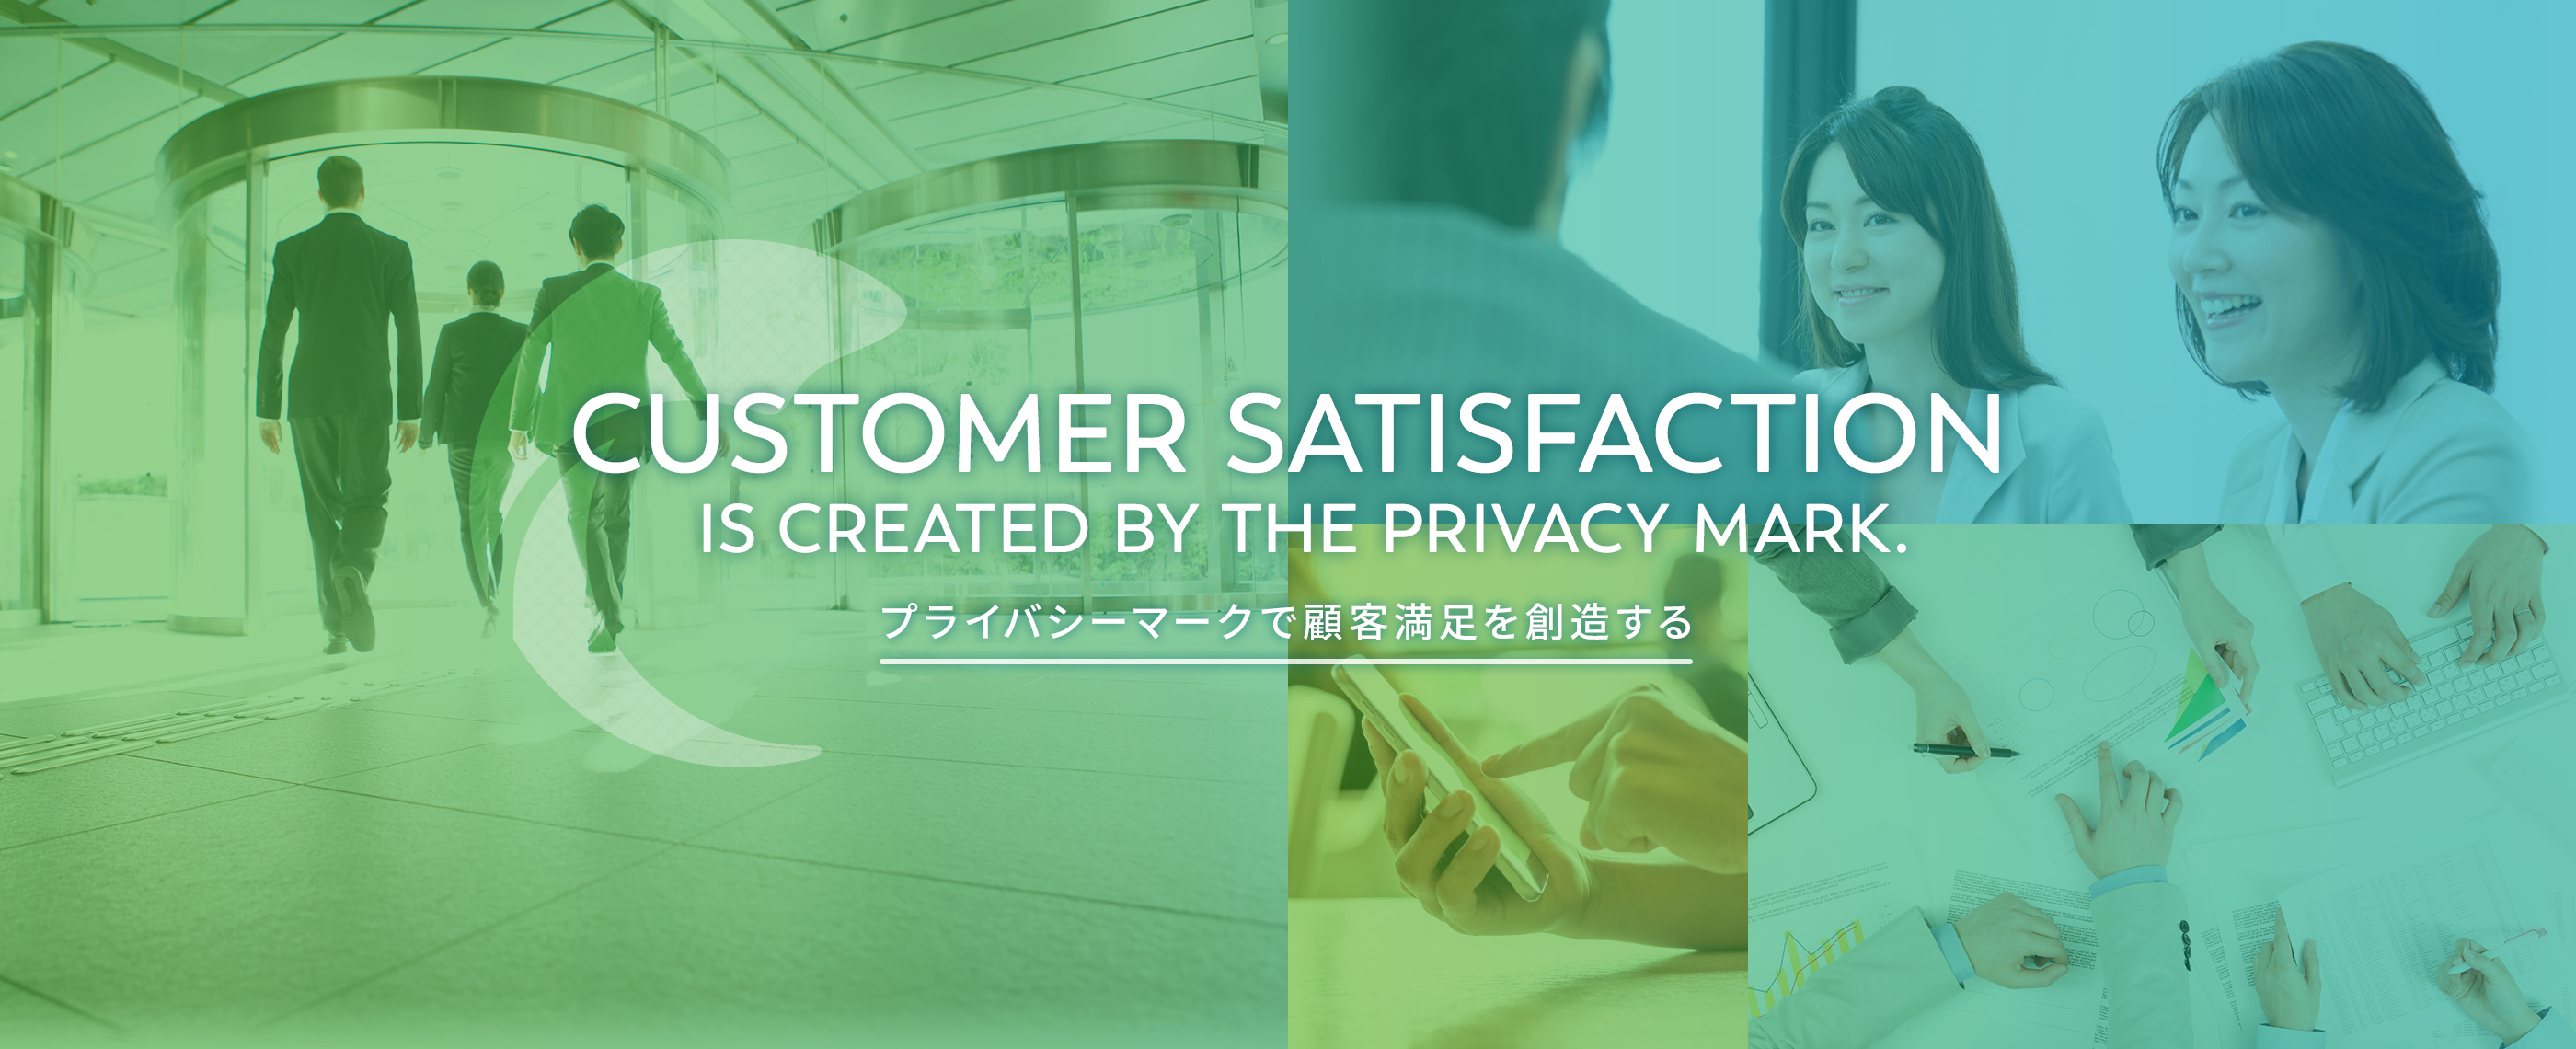 プライバシーマークで顧客満足を創造する